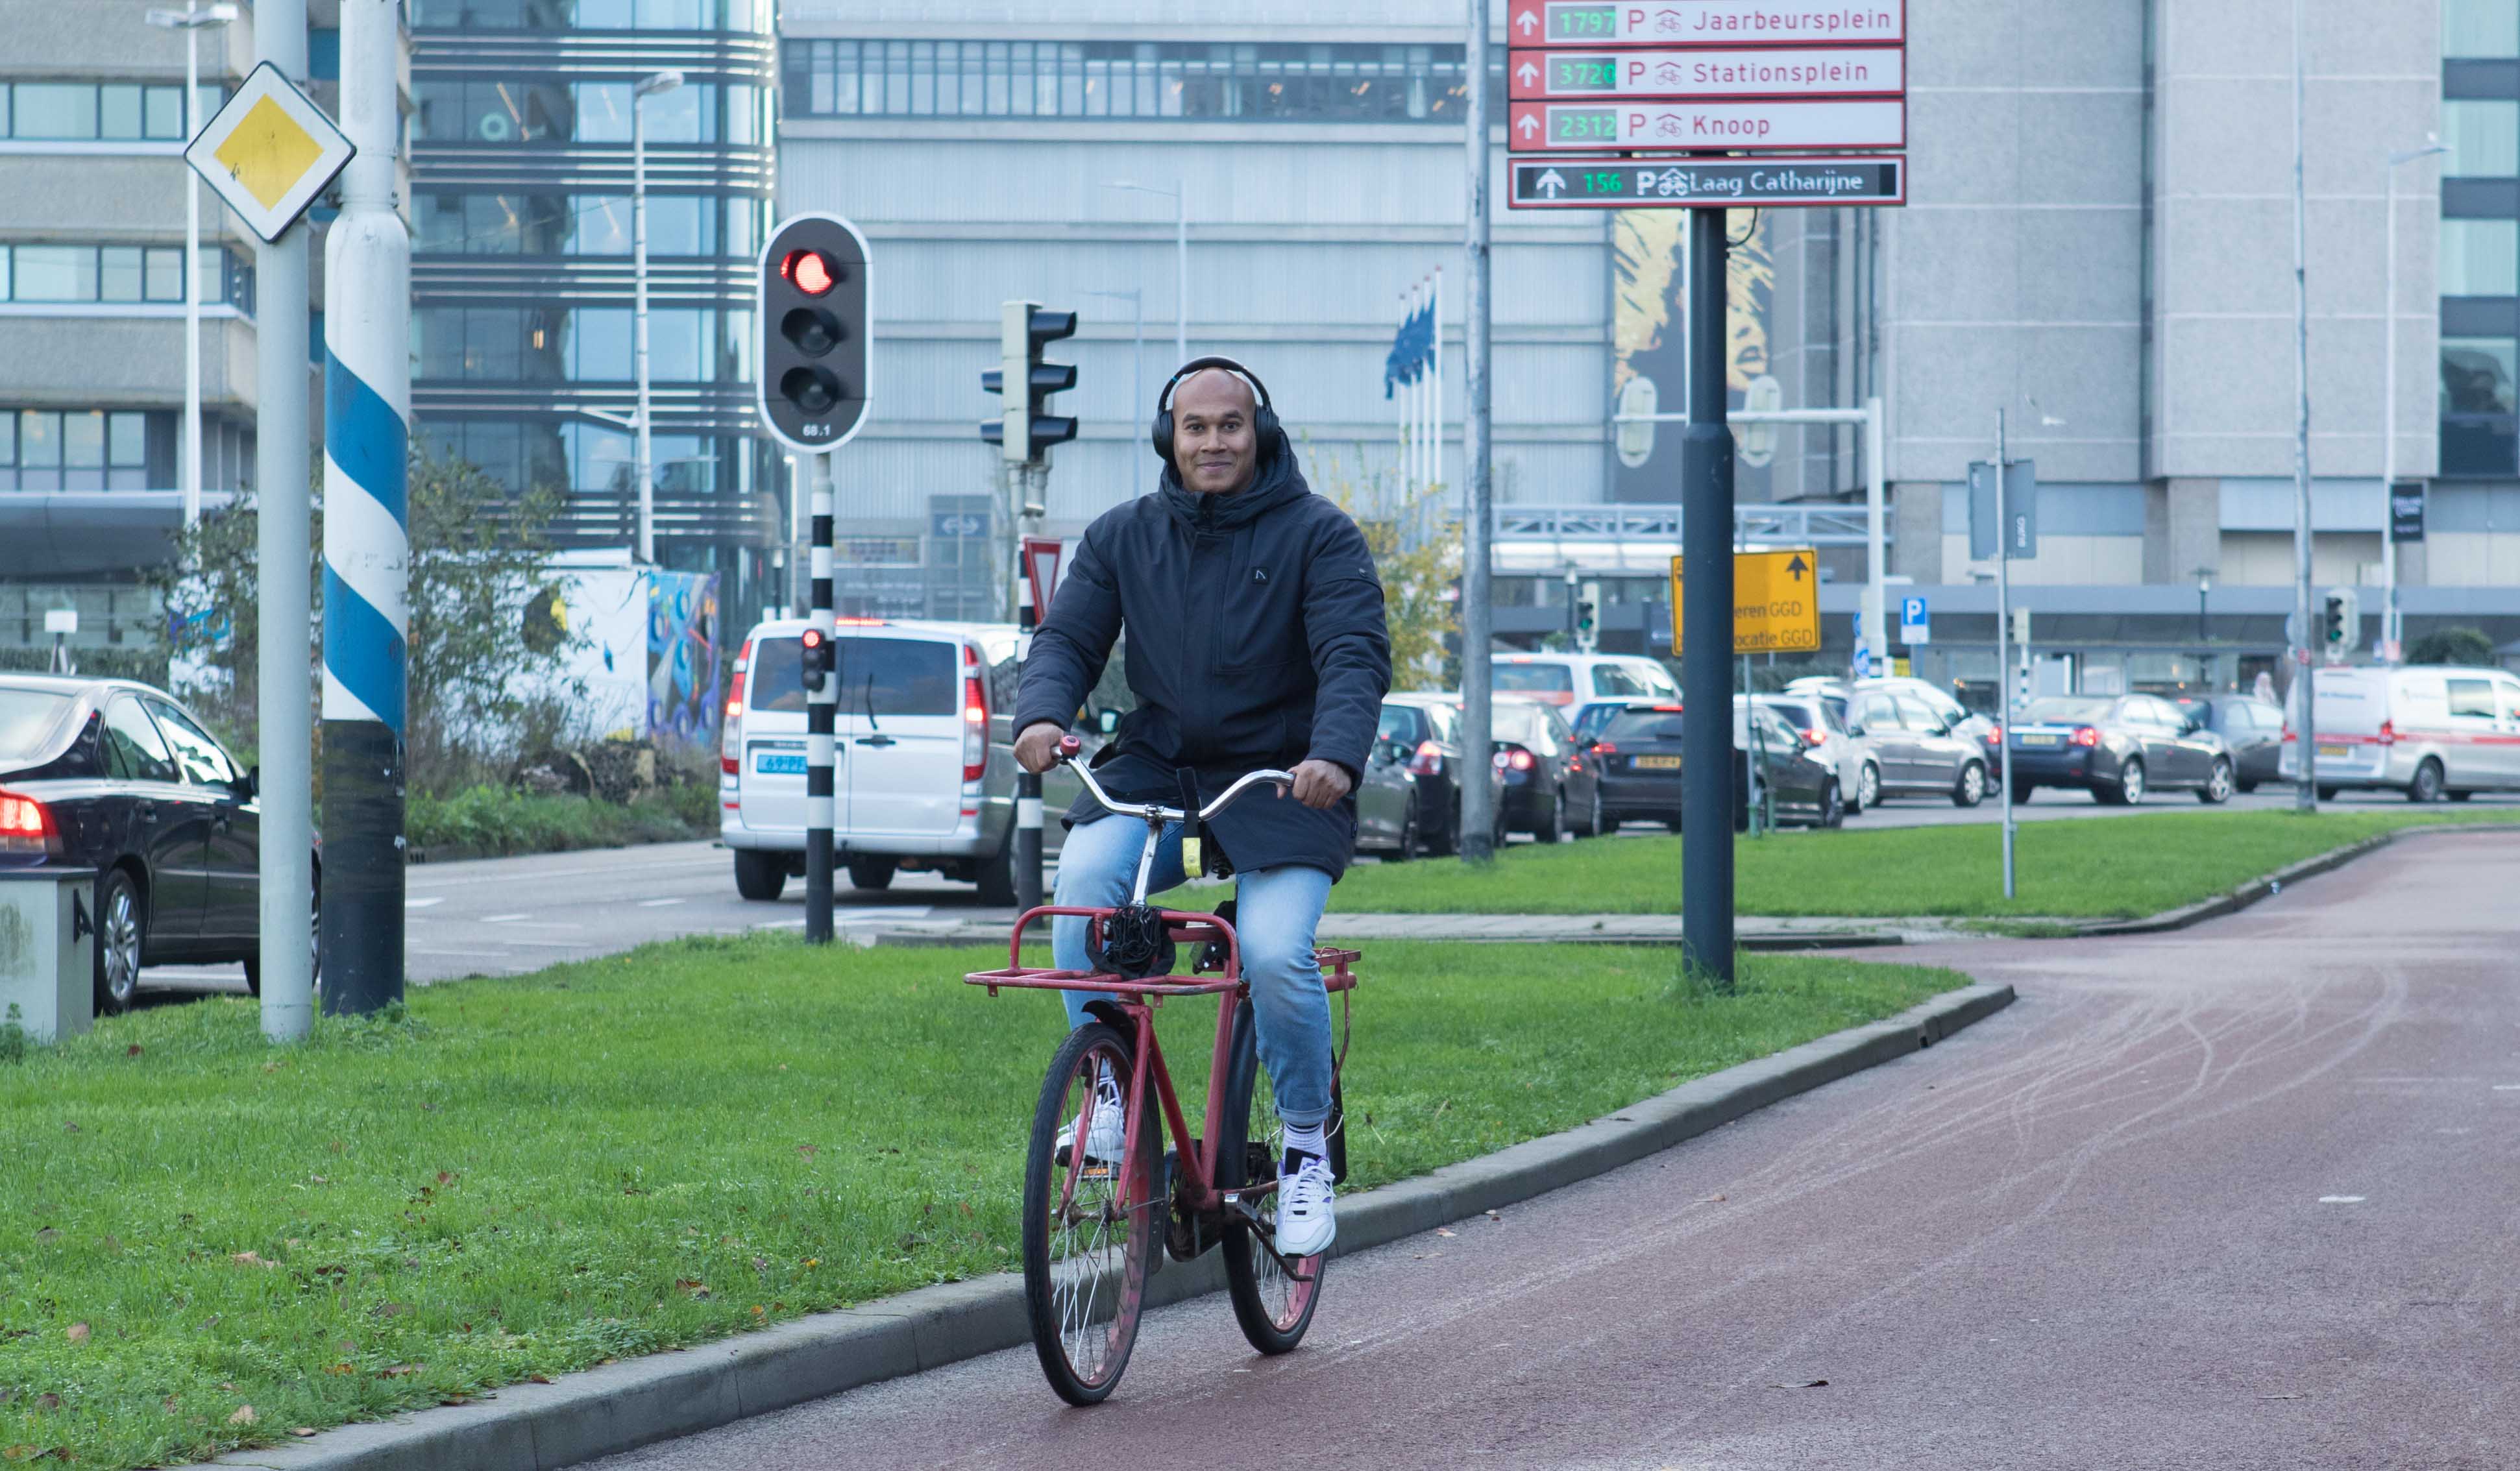 Joy, lid van het Stadsteam, is aan het fietsen.